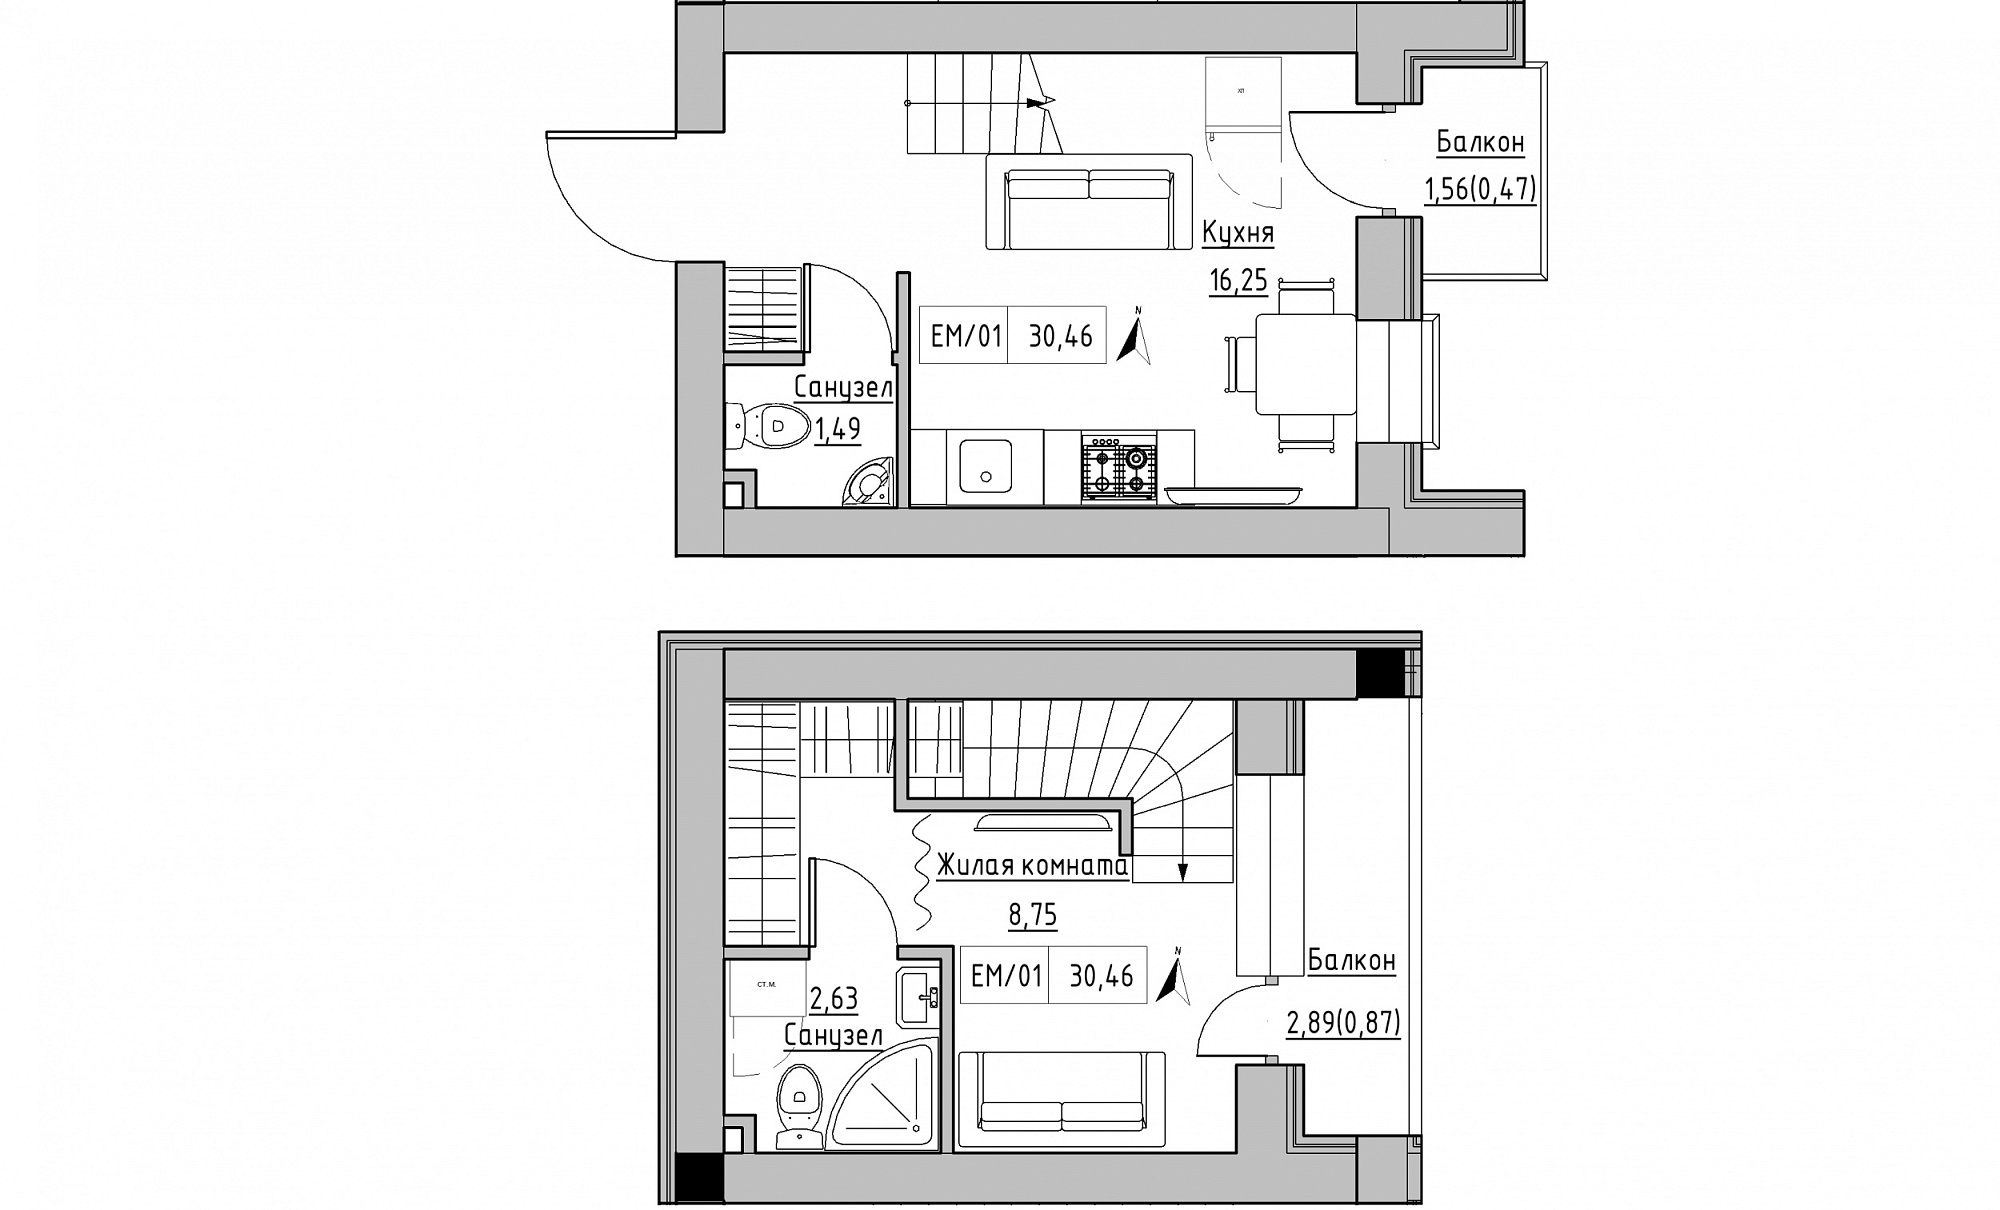 Planning 2-lvl flats area 30.46m2, KS-015-05/0006.